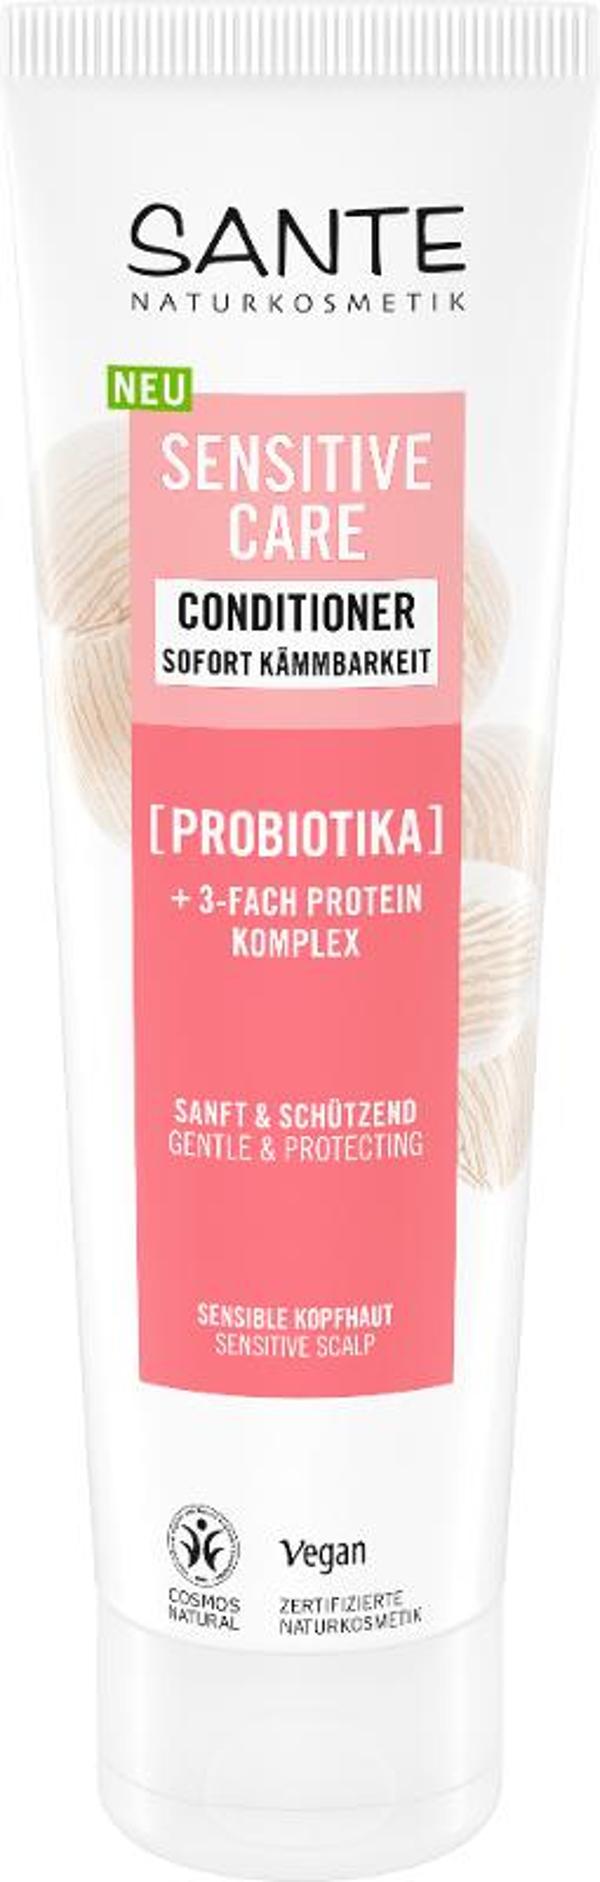 Produktfoto zu Sensitive Care Spülung Probiotika 150ml